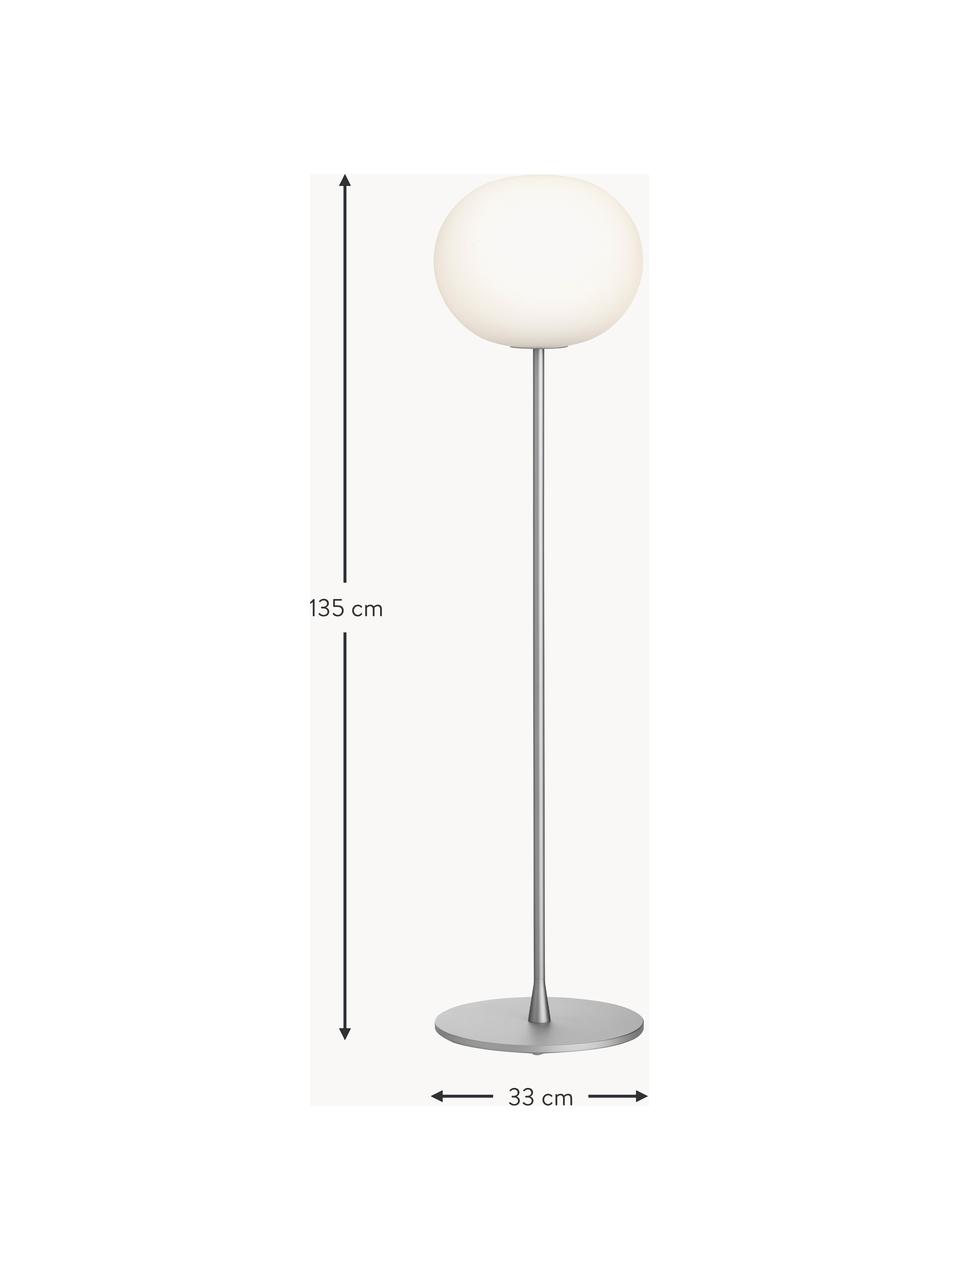 Lampa podłogowa z funkcją przyciemniania Glo-Ball, Odcienie srebrnego, W 135 cm